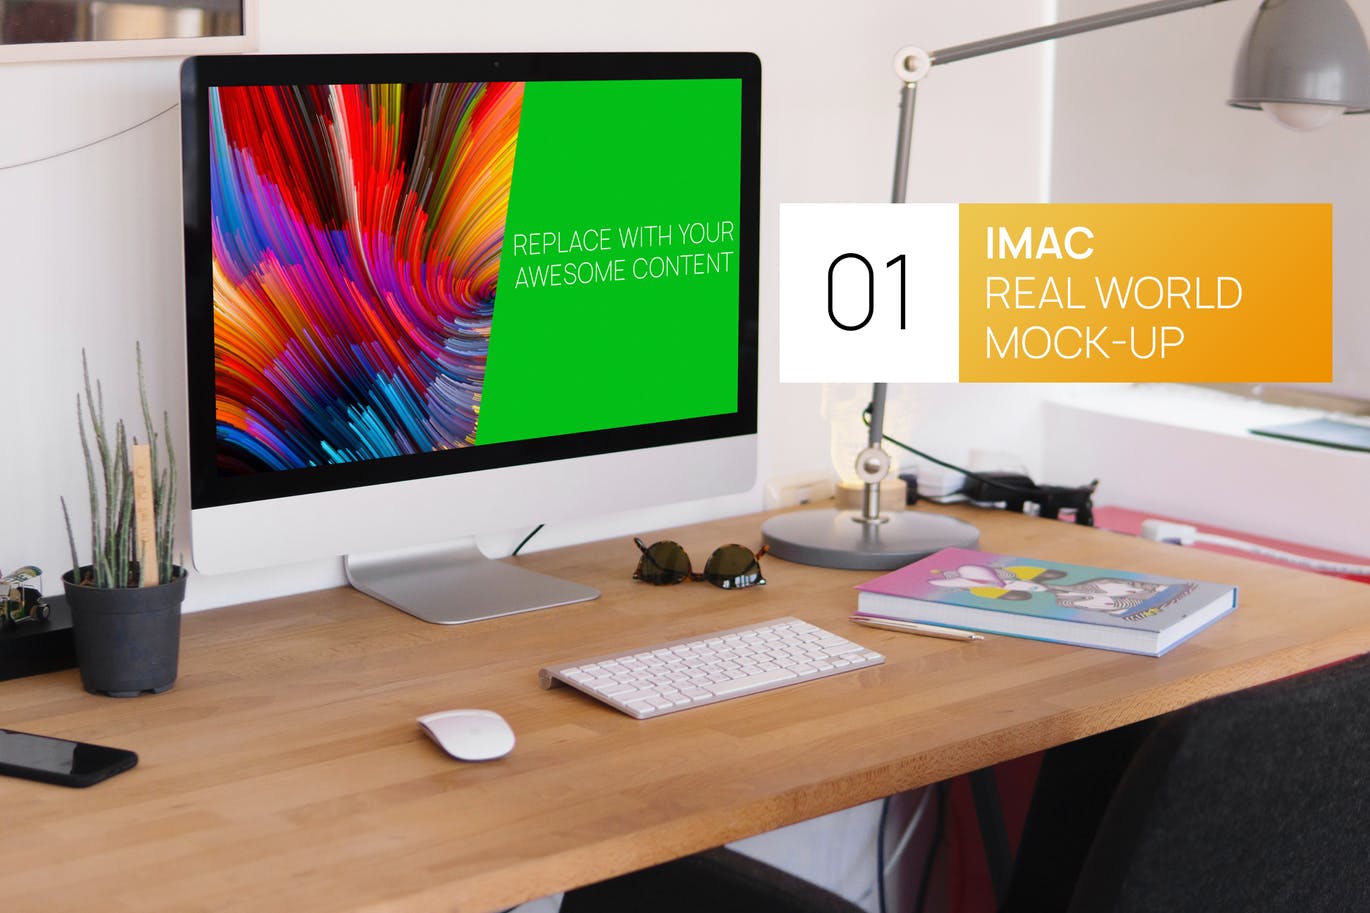 简约实木办公桌场景27寸iMac一体机电脑第一素材精选样机 Wooden Desk iMac 27 Real World Mock-up插图